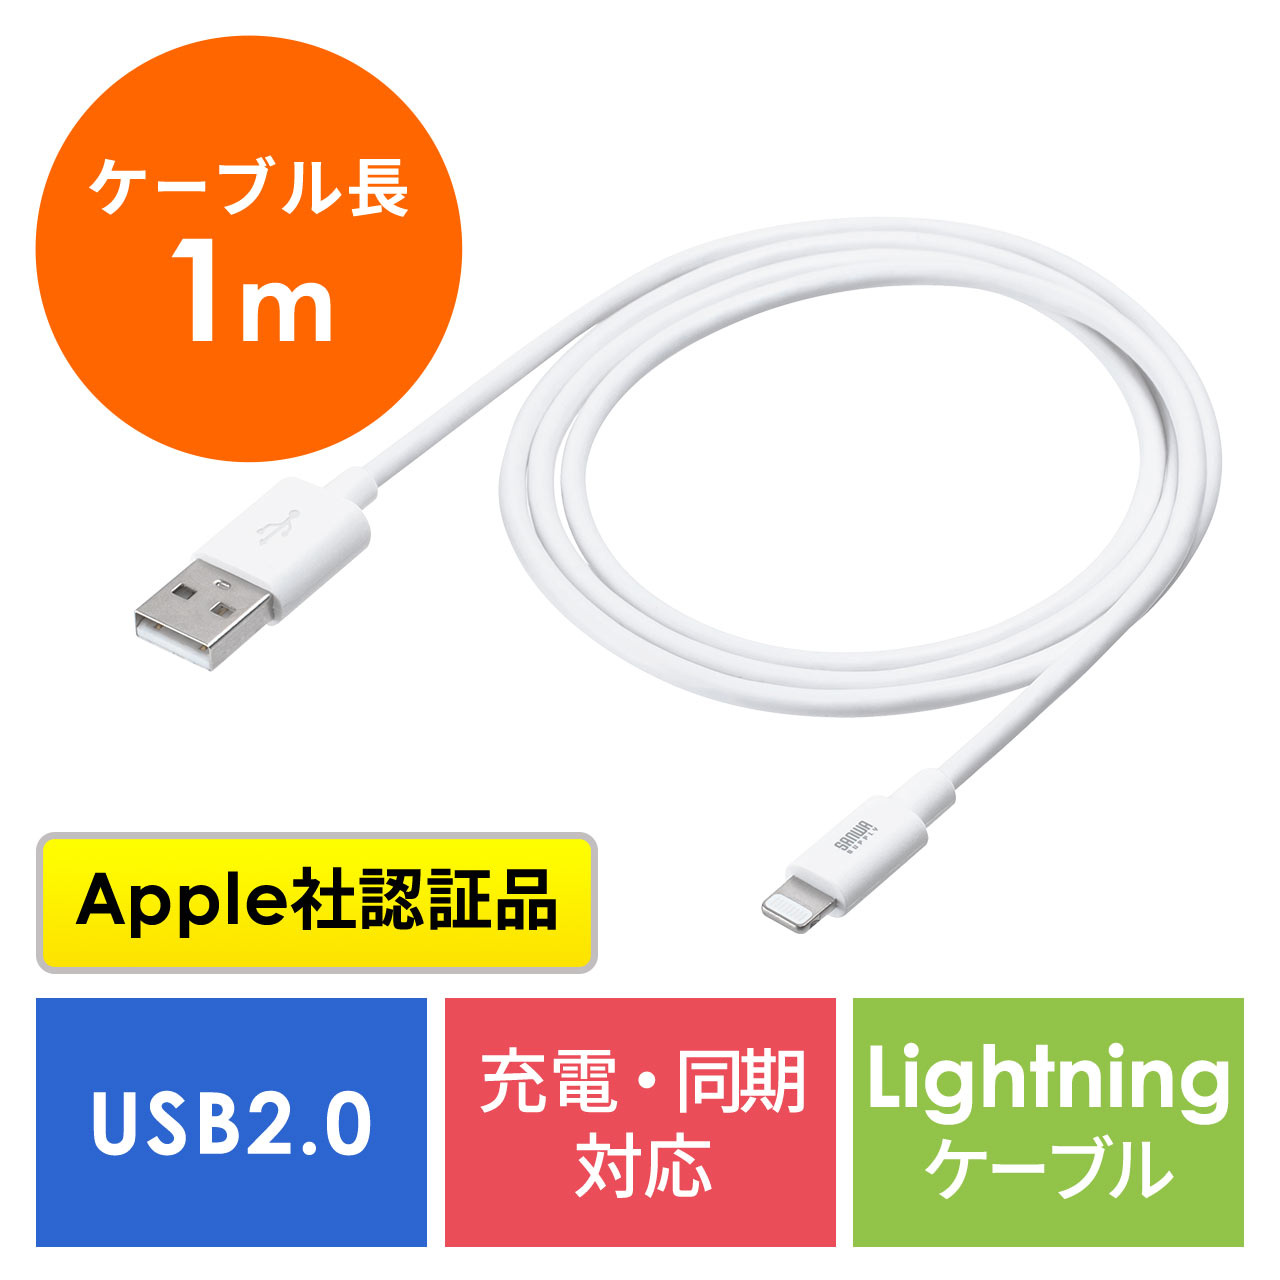 Lightningケーブル 1m iPhone iPad データ通信 充電ケーブル MFi認証品 ホワイト 500-IPLM011WK2の販売商品  通販ならサンワダイレクト